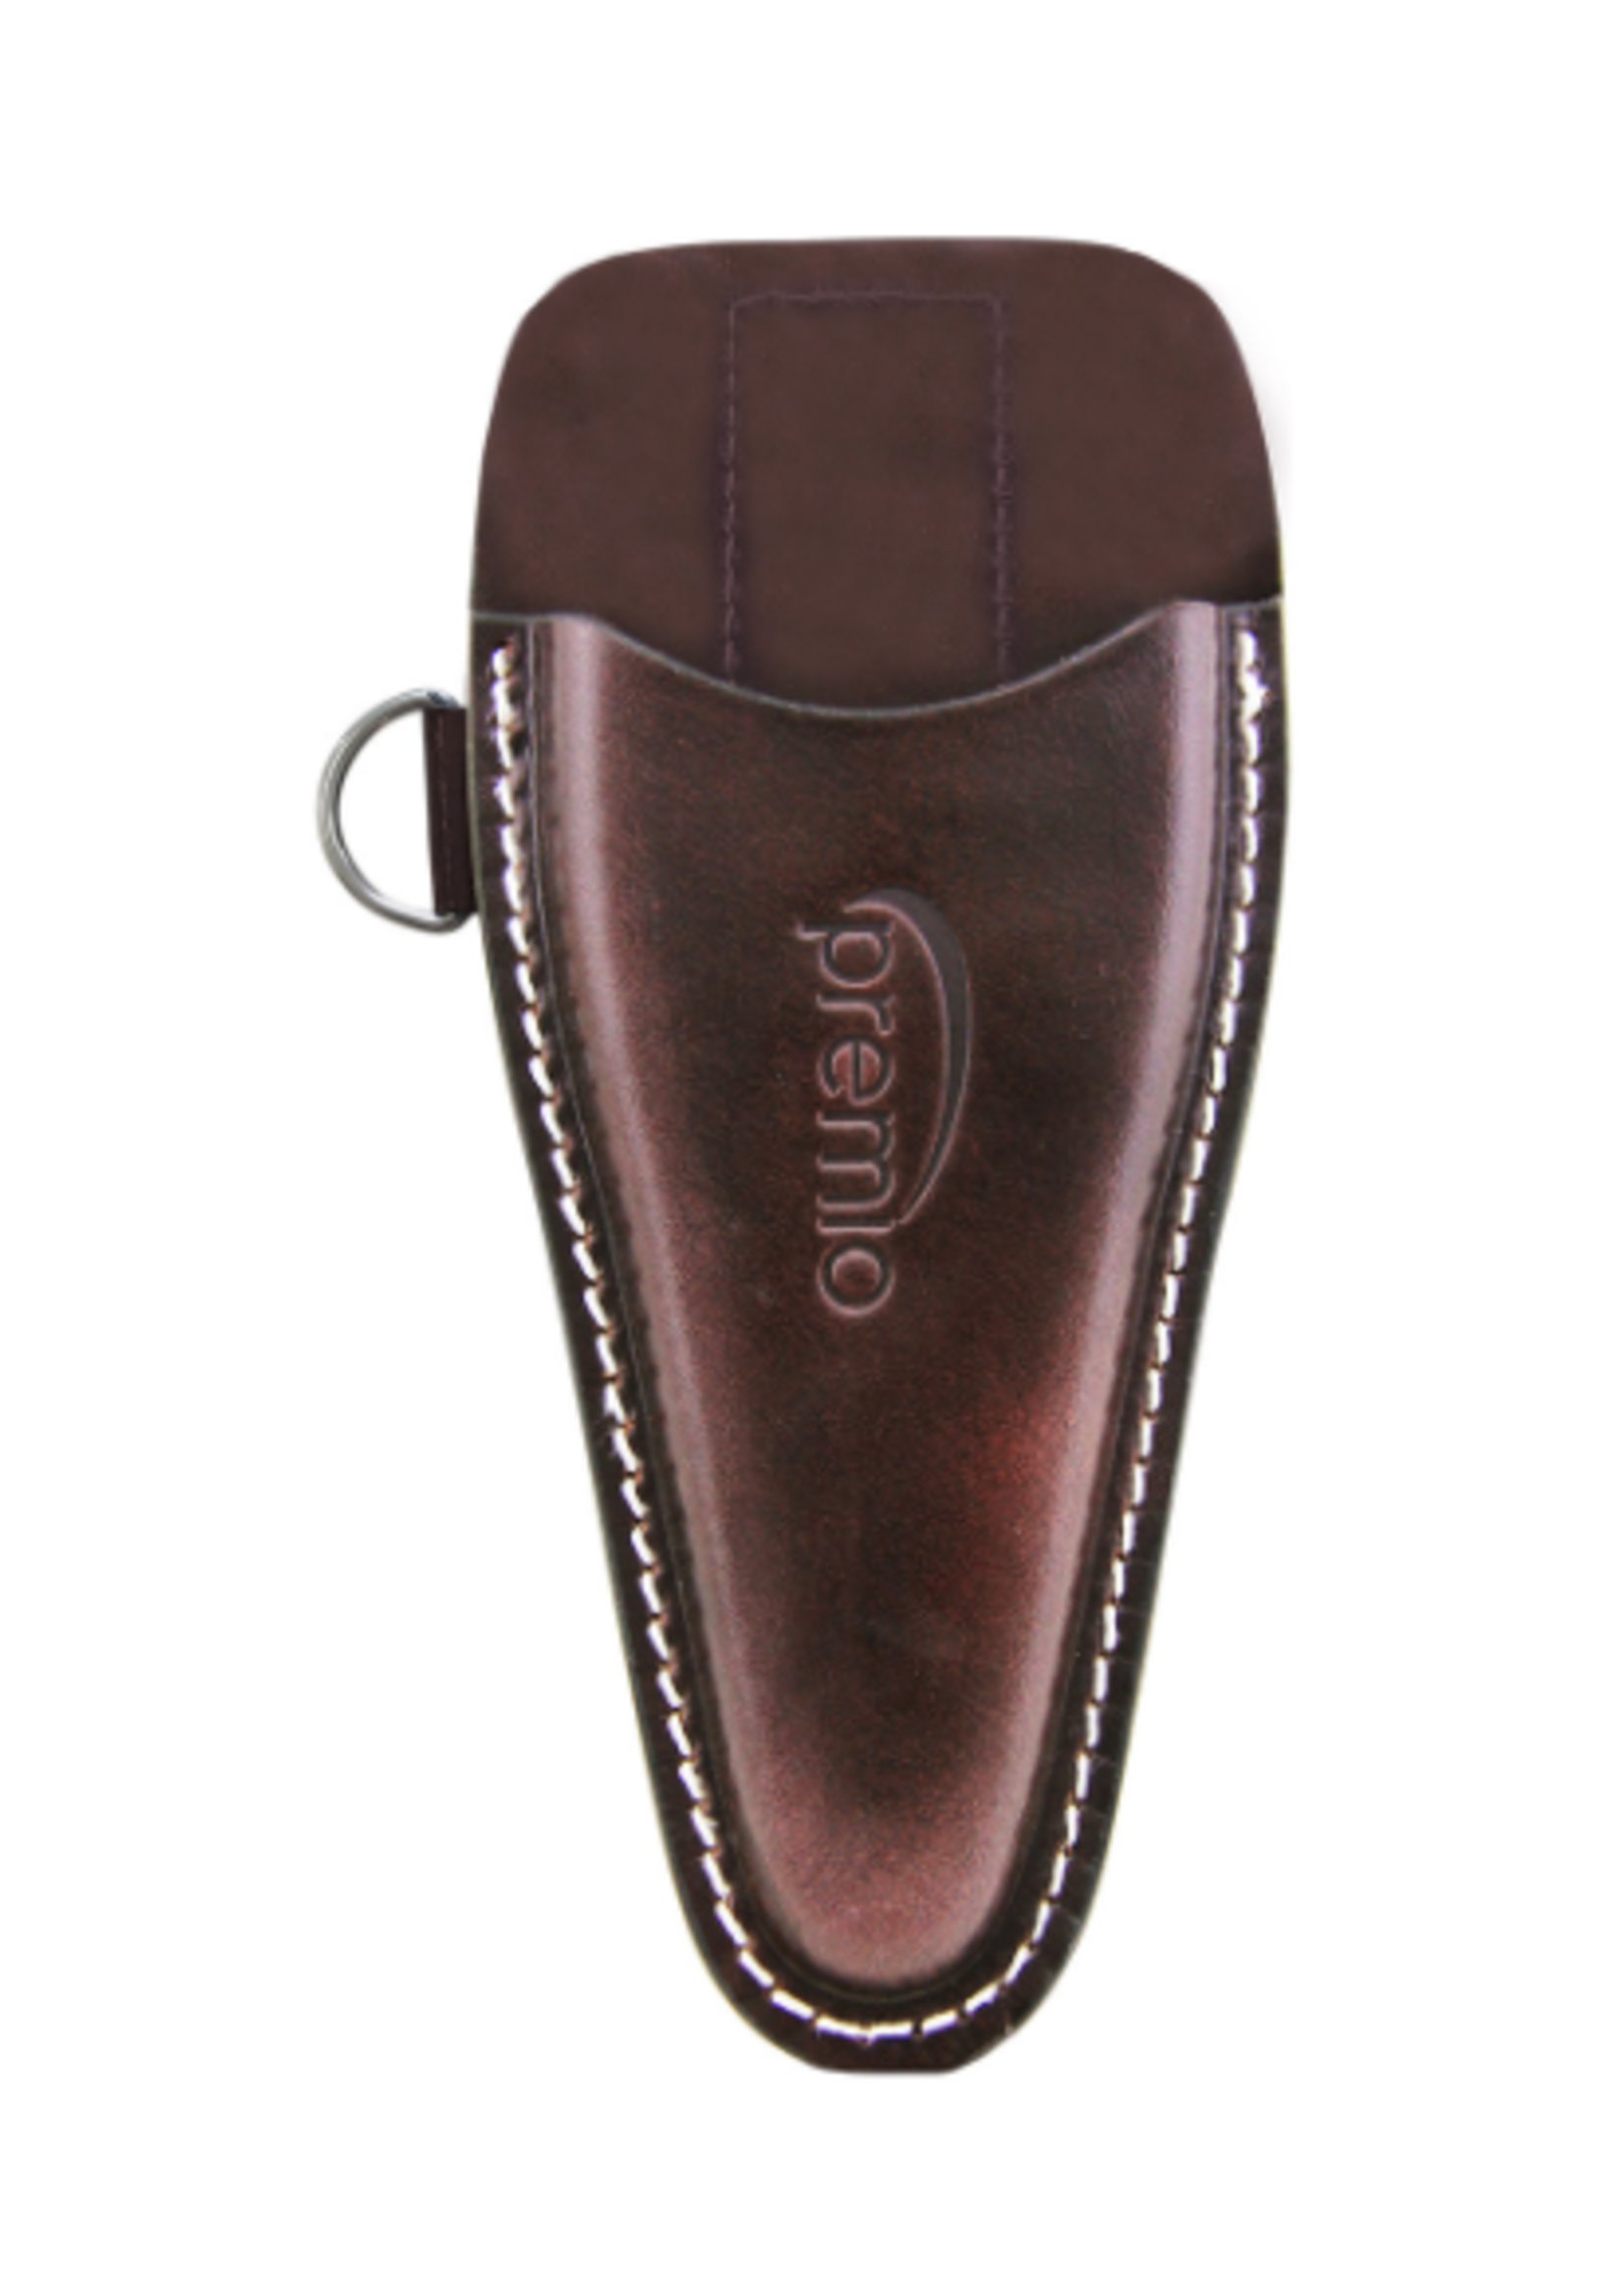 Danco Premio Leather Sheath 7.5" - Brown